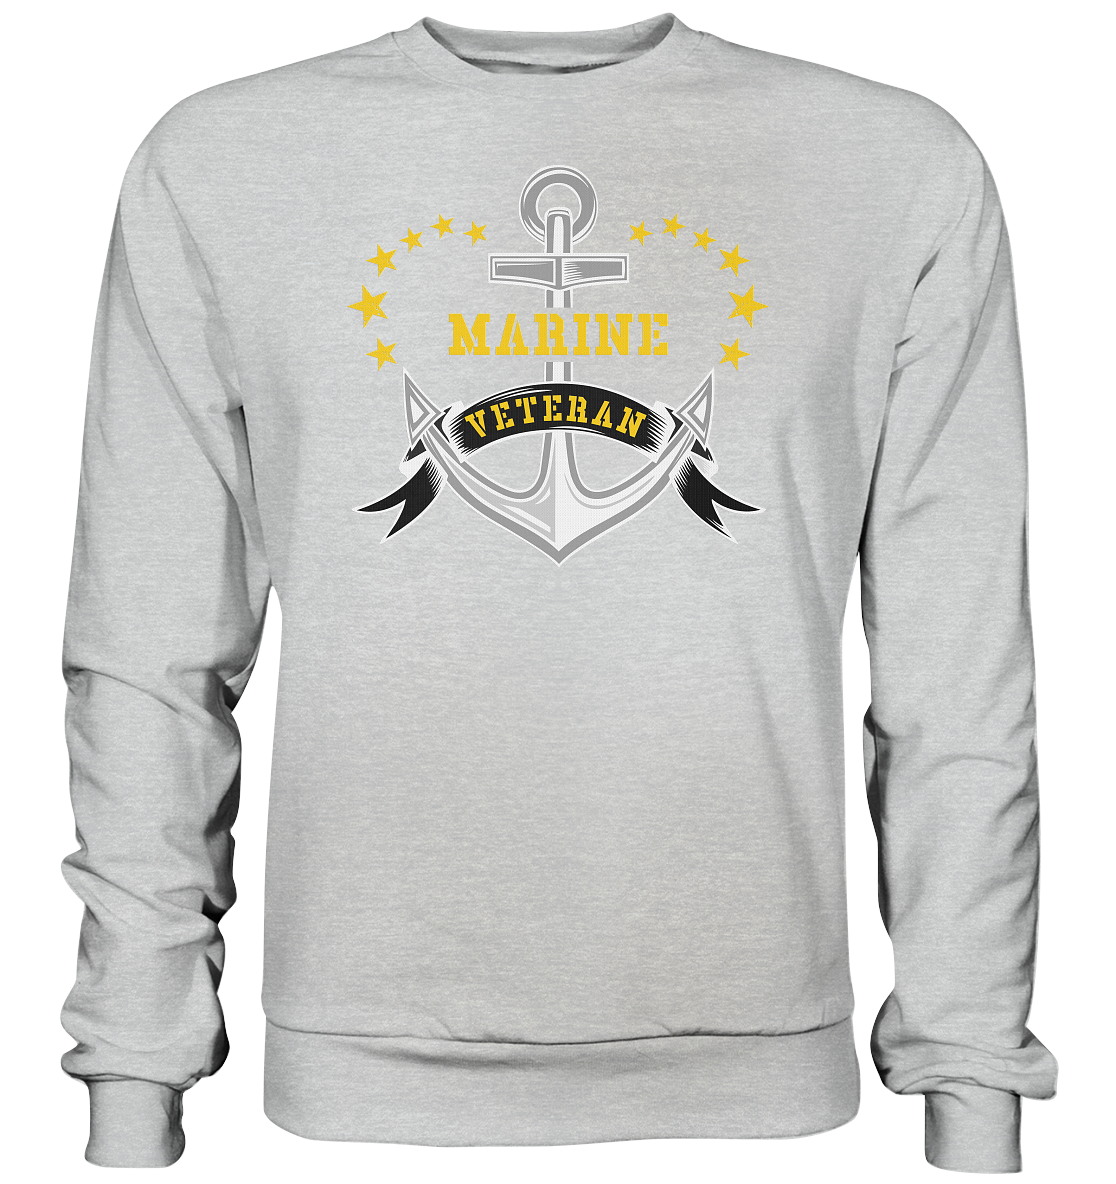 ANKER MARINE VETERAN - Premium Sweatshirt